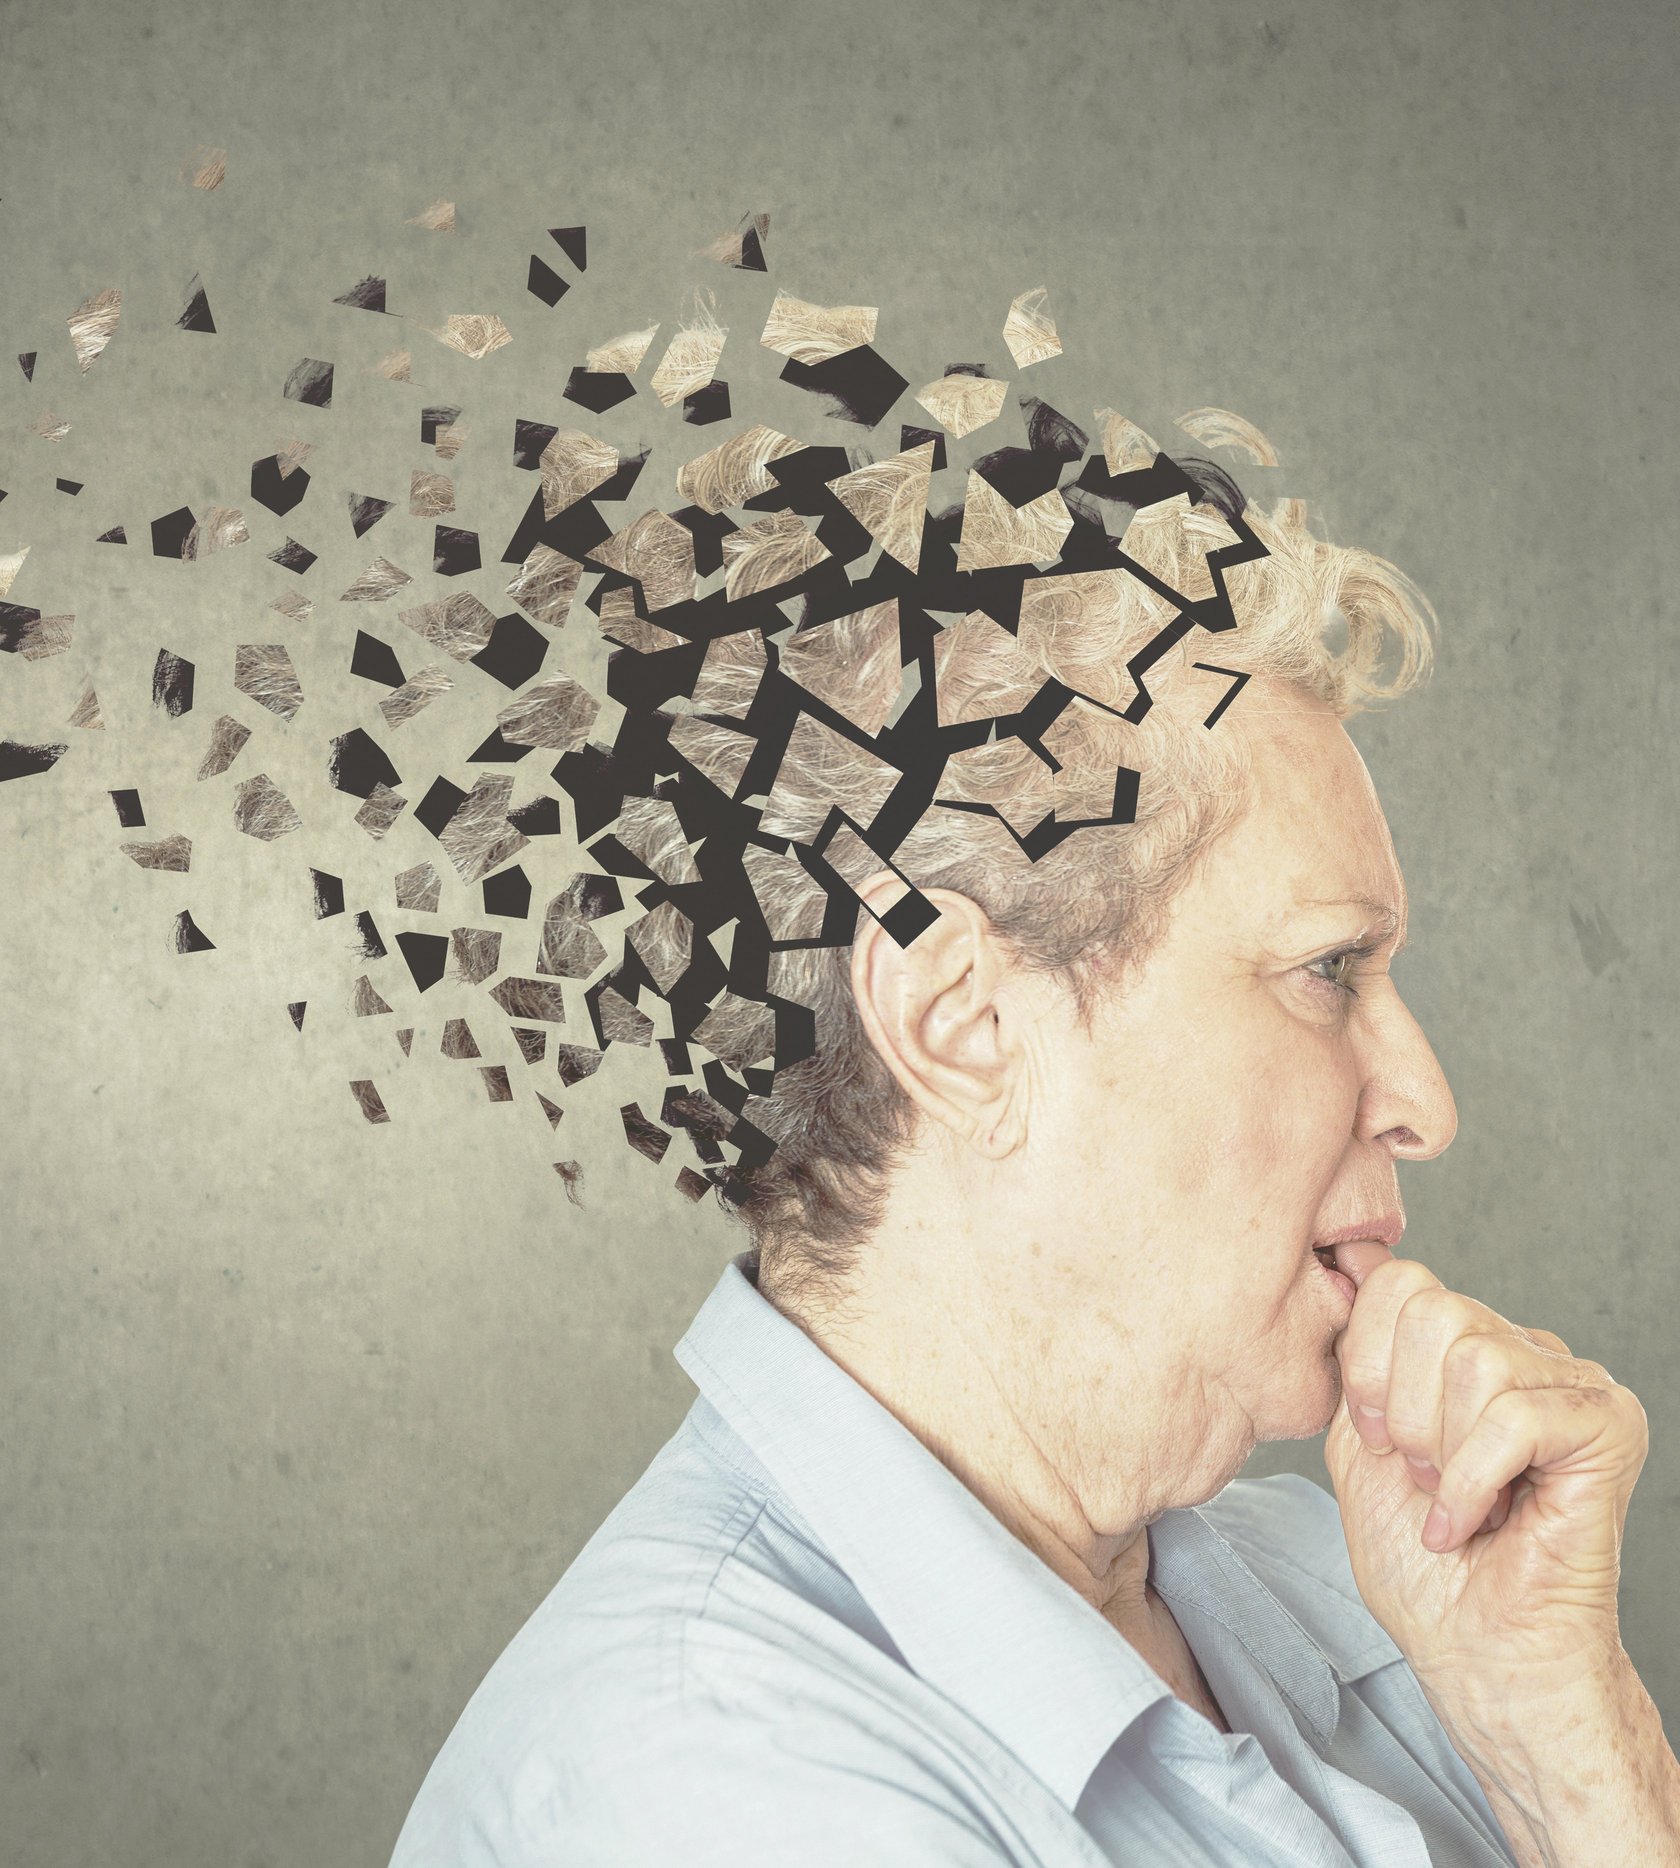 Ältere Frau am Nachdenken, während Ihr Hinterkopf in Puzzlestücke aufgeht, um eine inhaltliche Denkstörung darzustellen